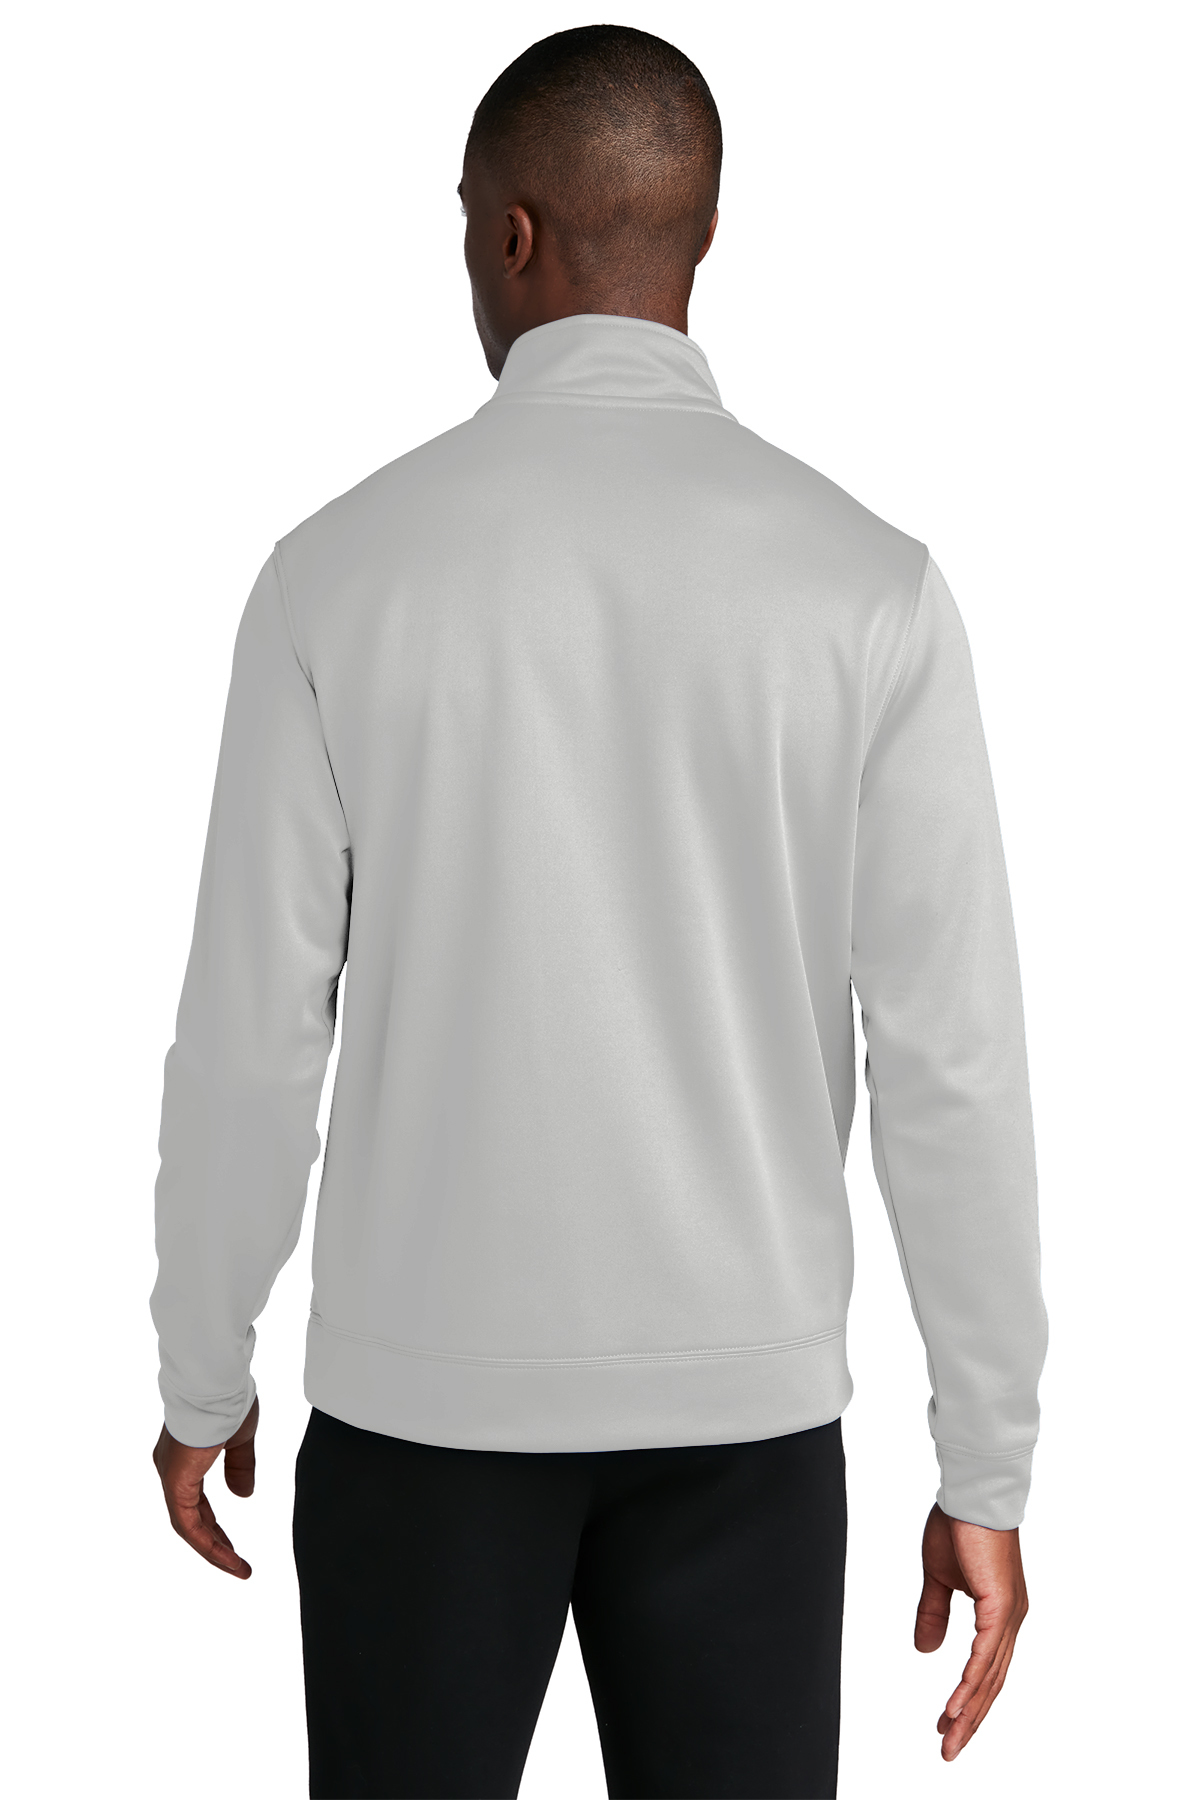 Port & Company ® Performance Fleece 1/4-Zip Pullover Sweatshirt ...